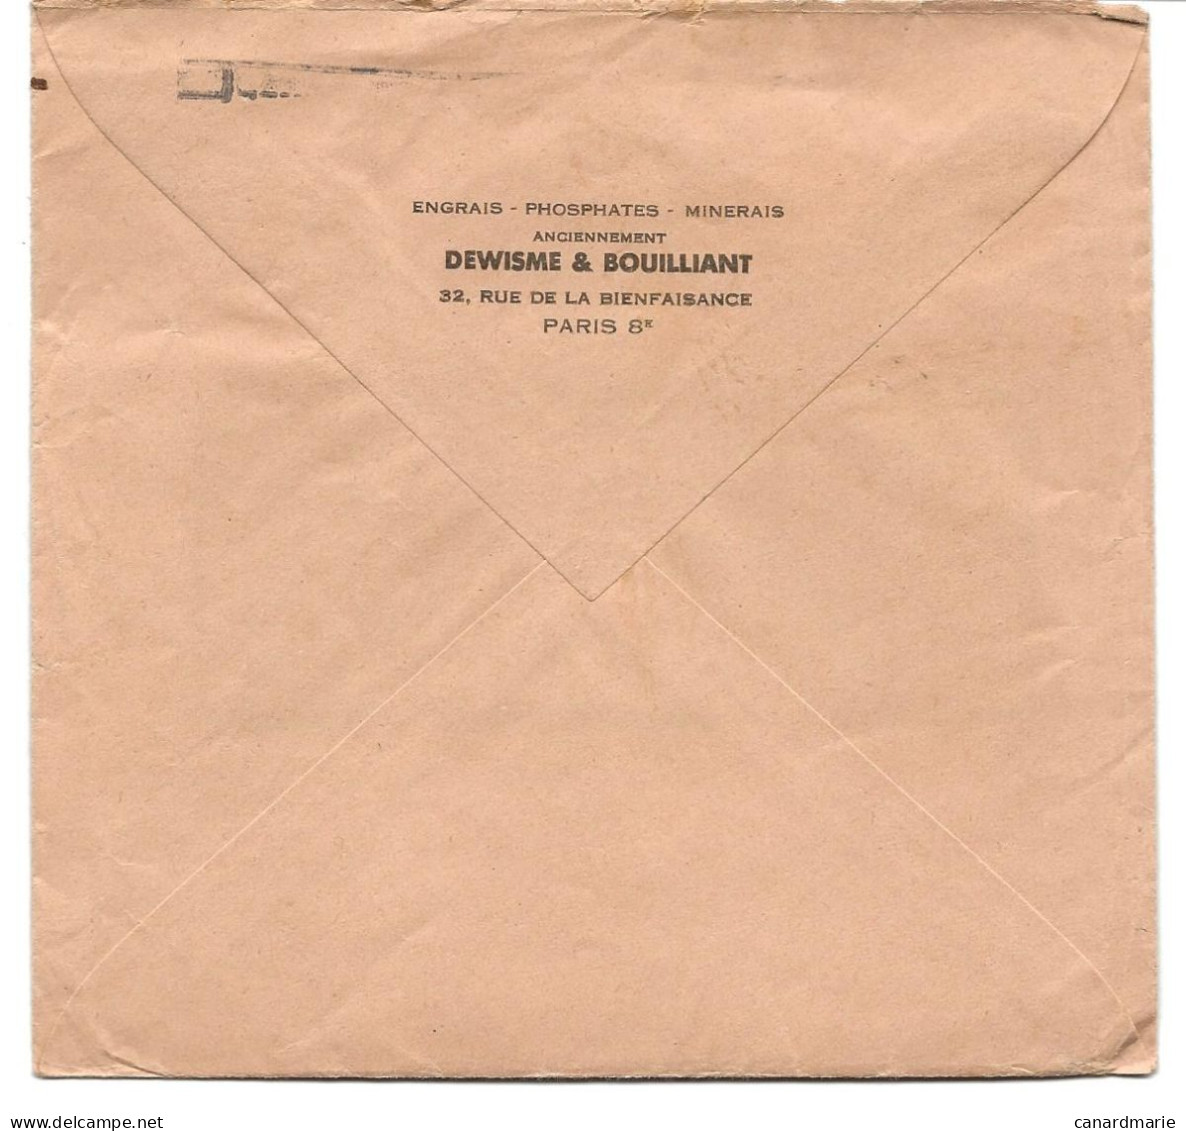 LETTRE 1953 AVEC TIMBRE AU TYPE MARIANNE DE GANDON PERFORE B D ( DEWISME ET BOUILLIANT ) - Briefe U. Dokumente